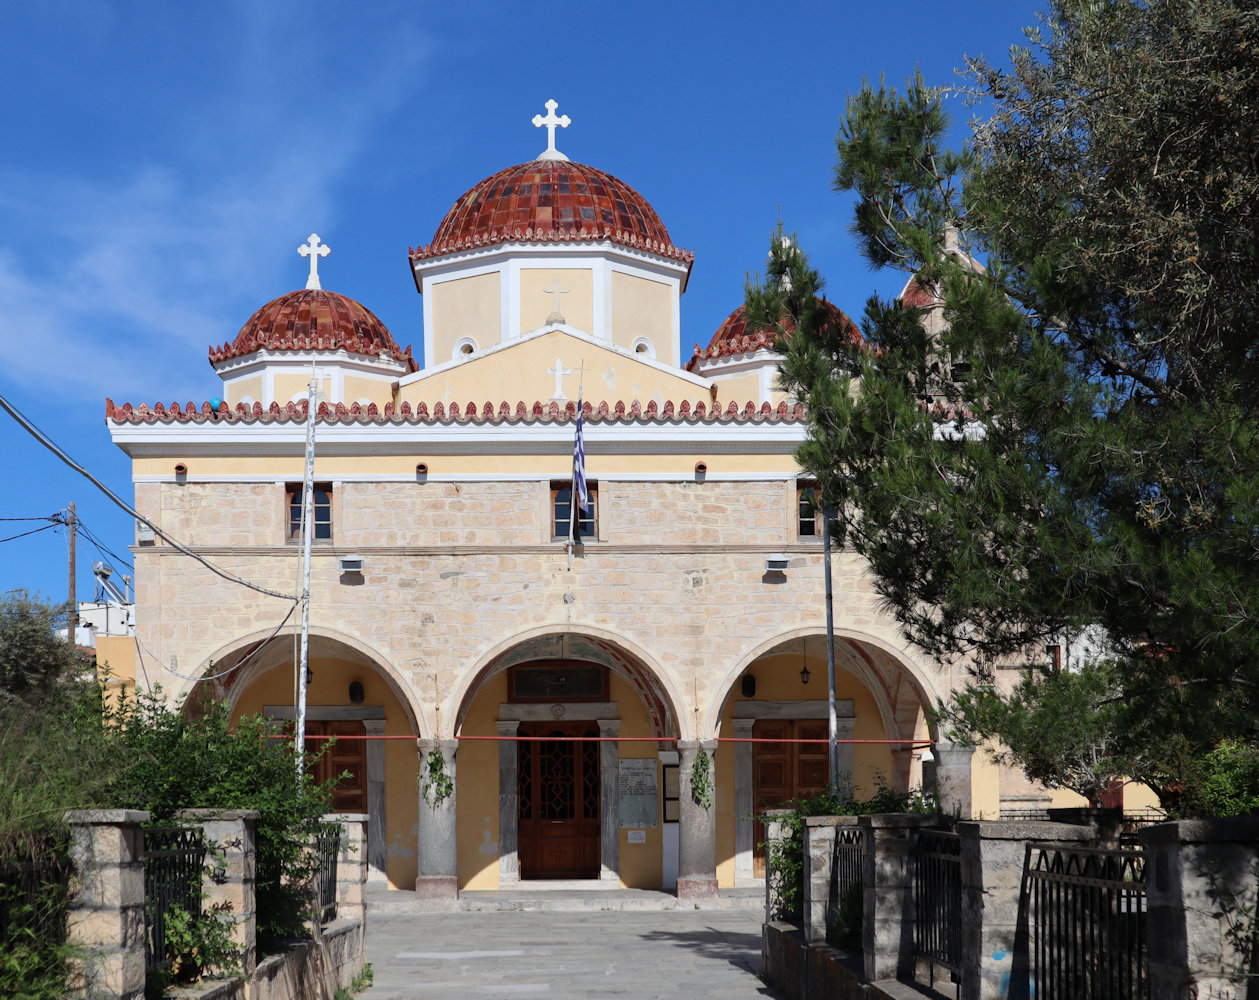 Metropolitankirche in Ägina auf Ägina, erbaut 1820. Zu Athansias Zeit war die Inselhauptstadt noch Ägina, bevor sie wenig später wegen der Piratenüberfälle nach Paliochóra ins Inselinnere verlegt wurde.